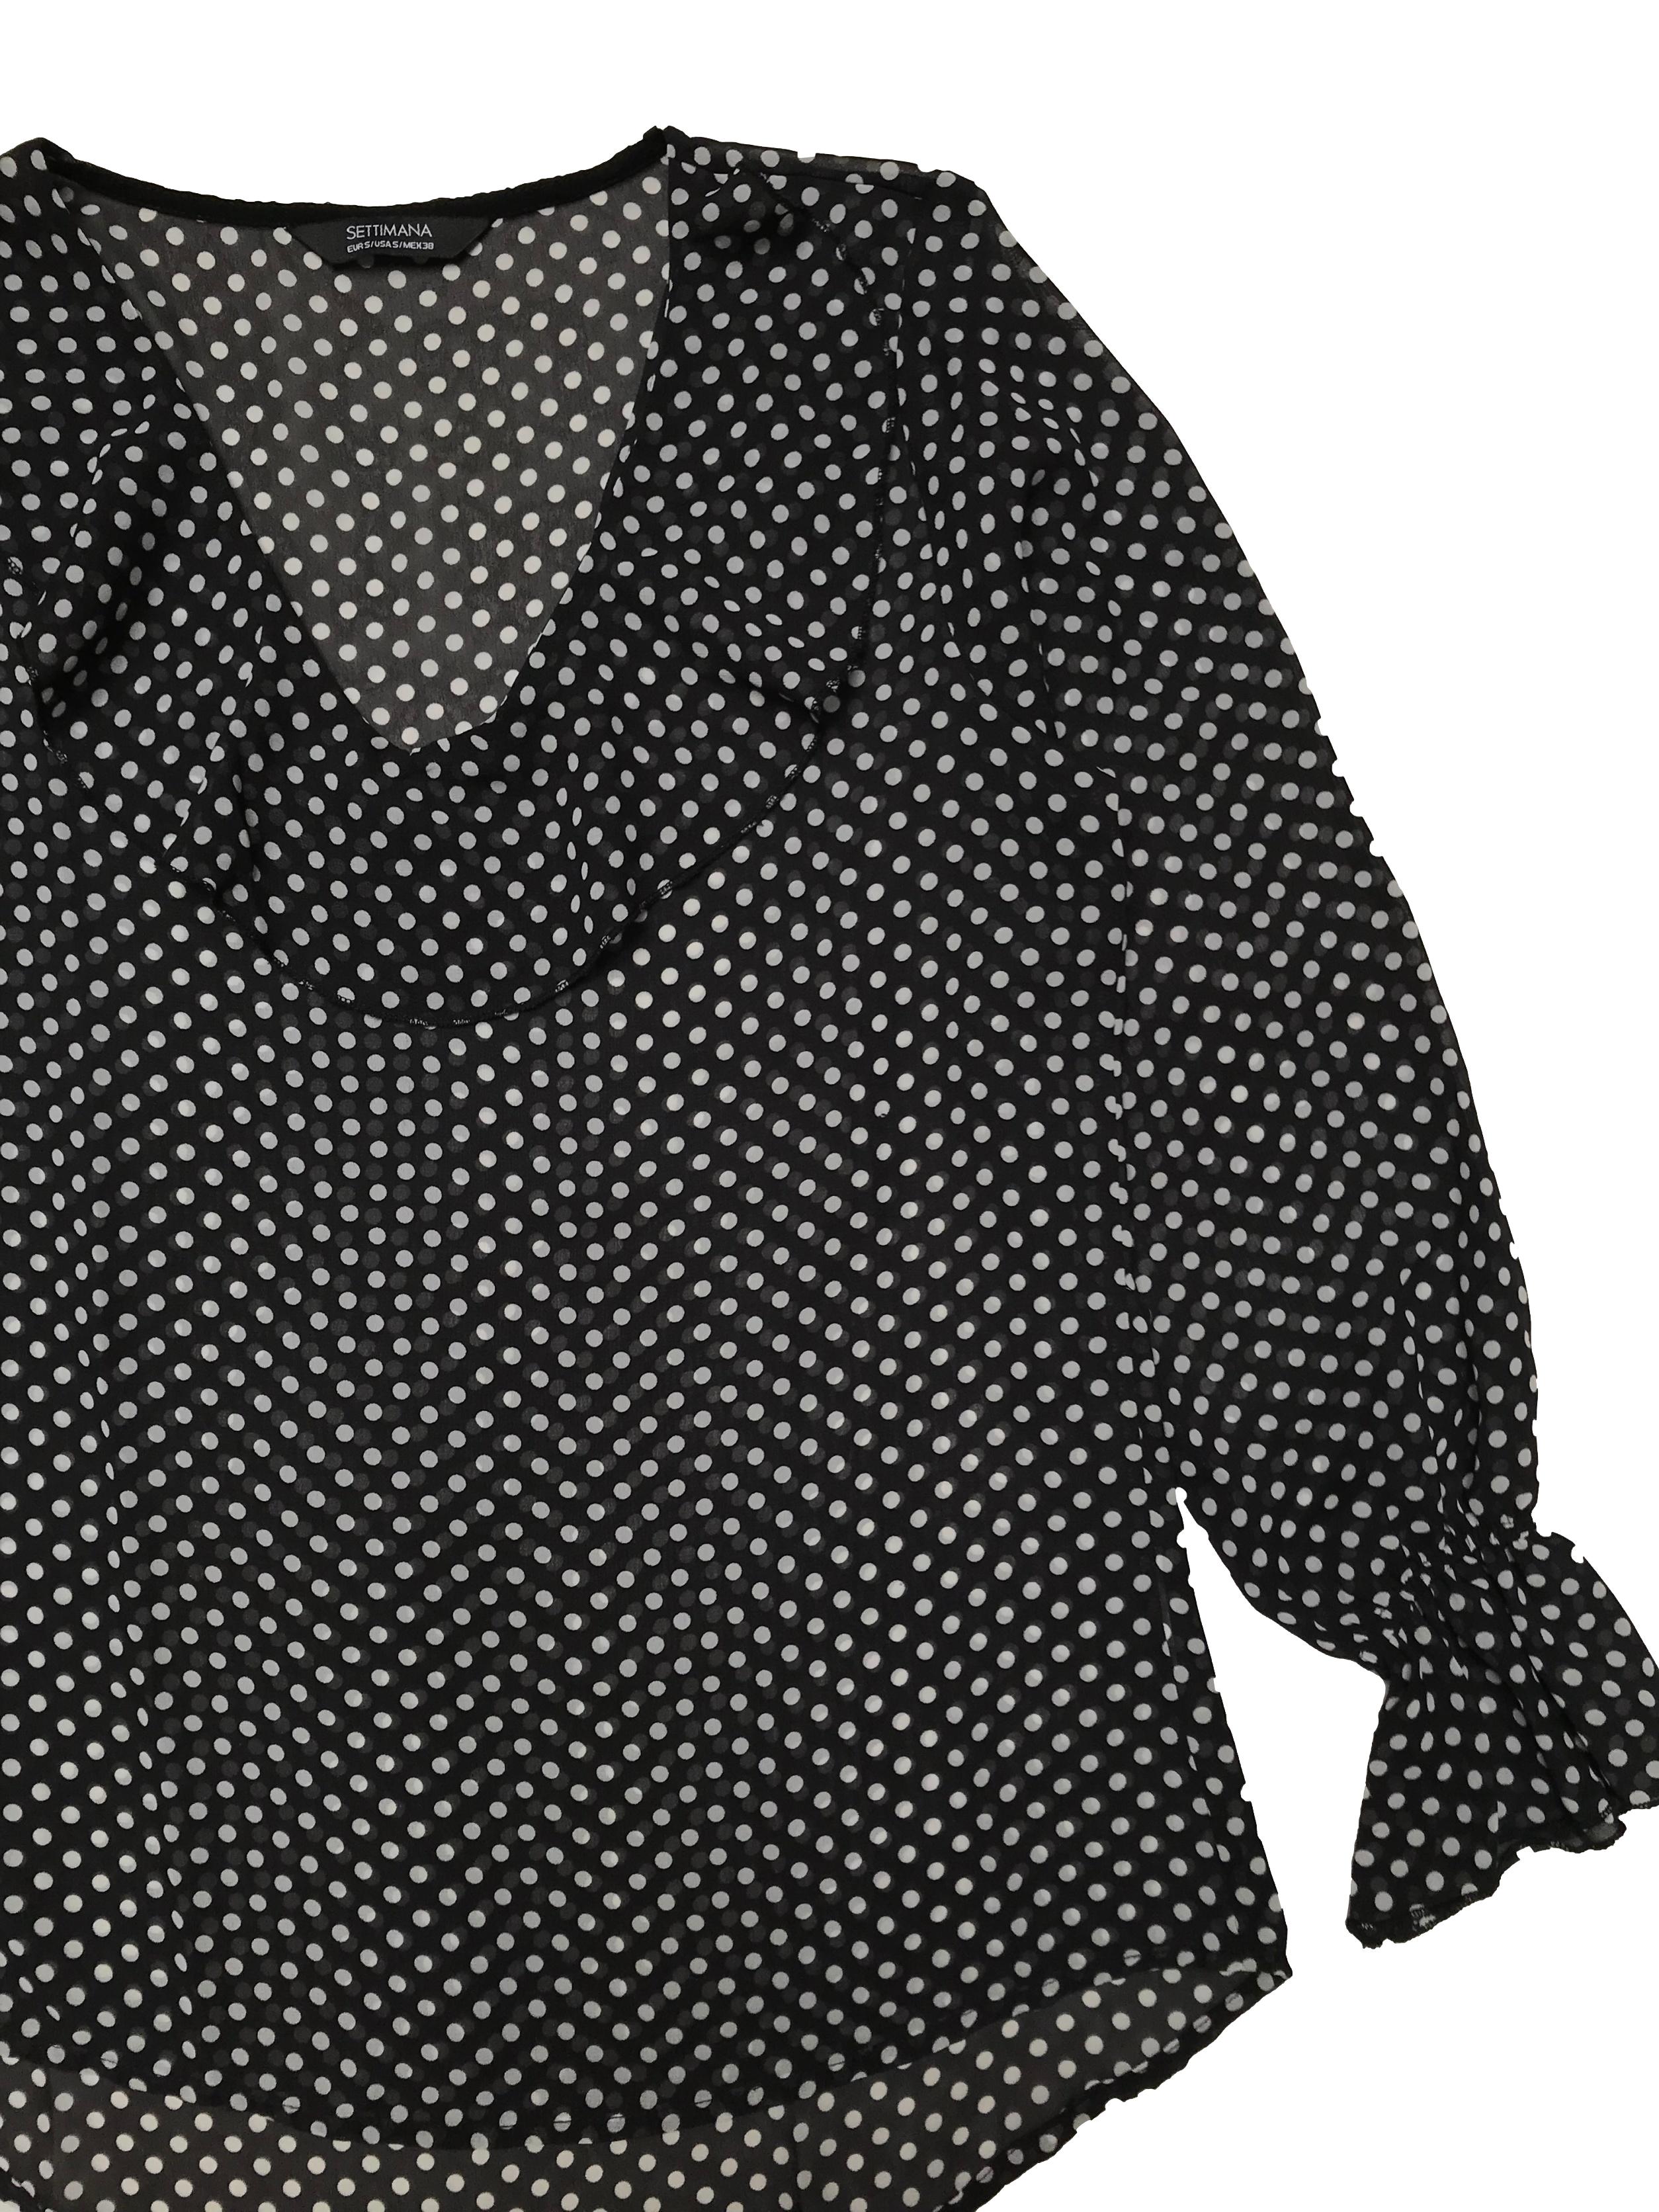 Blusa Settimana de gasa negra con lunares blancos, cuello en V con volante, elástico en los puños. Ancho 98cm Largo 60-70cm